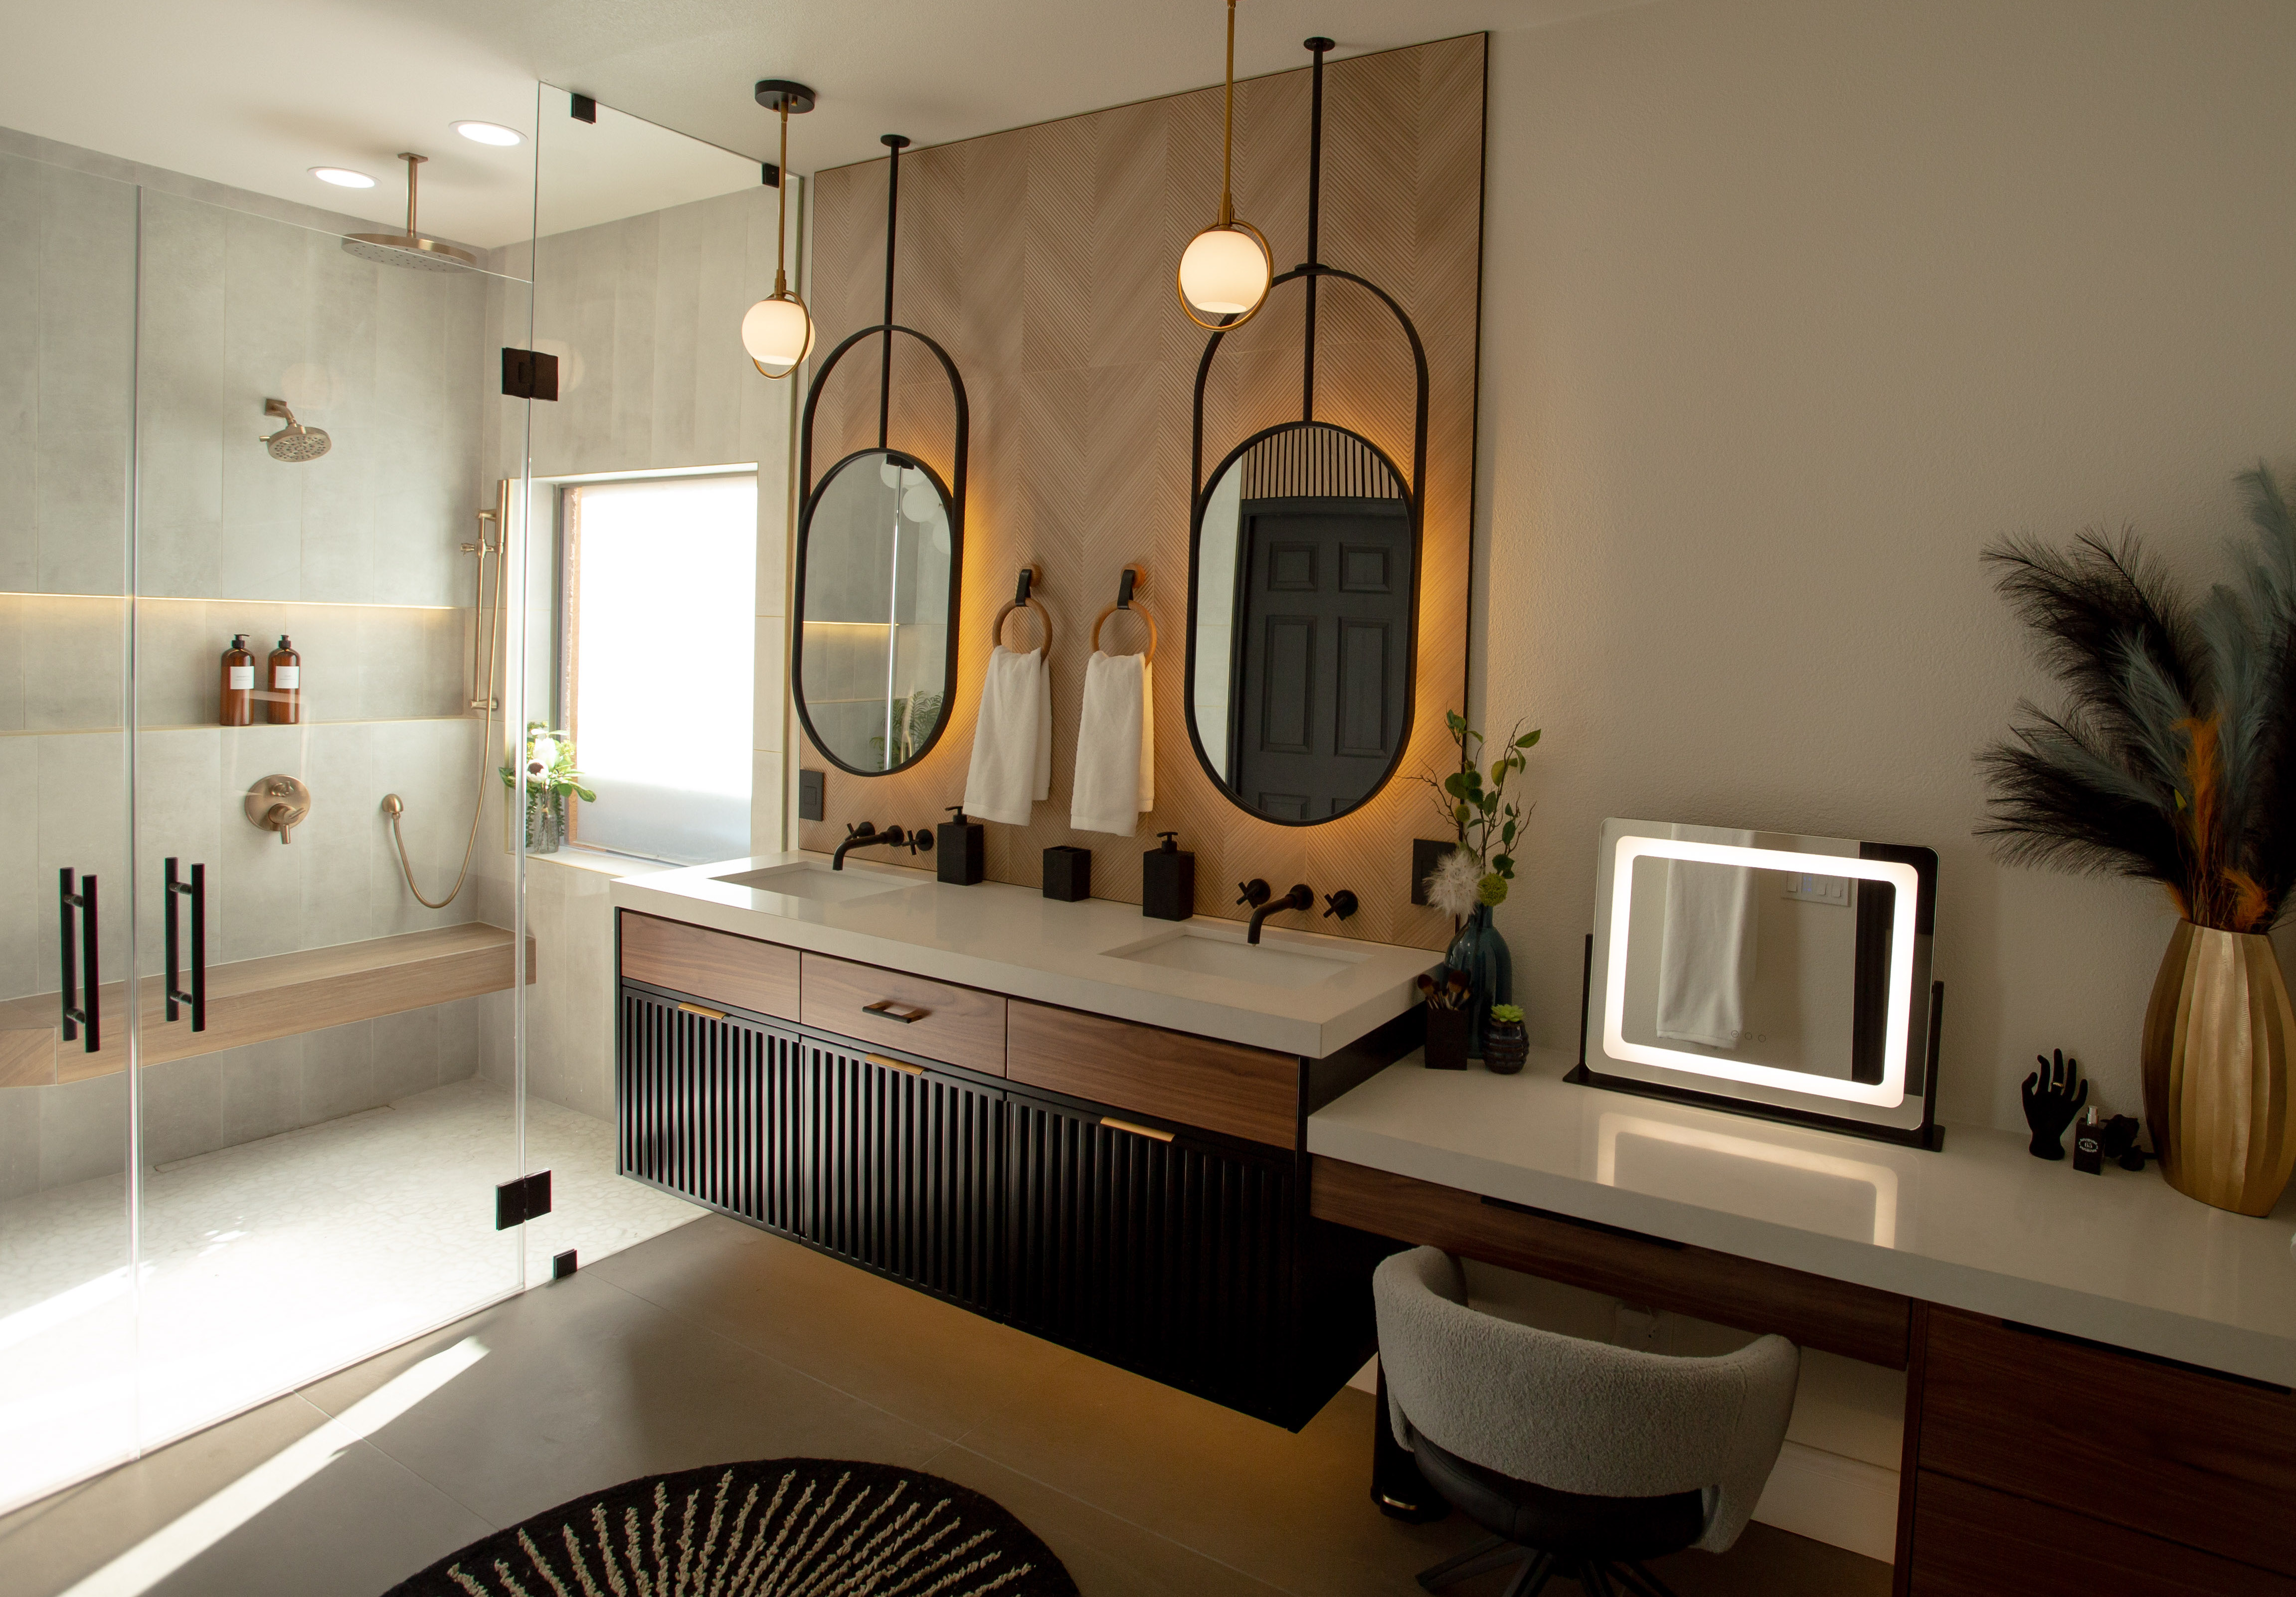 Best Residential Bathroom Design Over 75 sq ft - 01